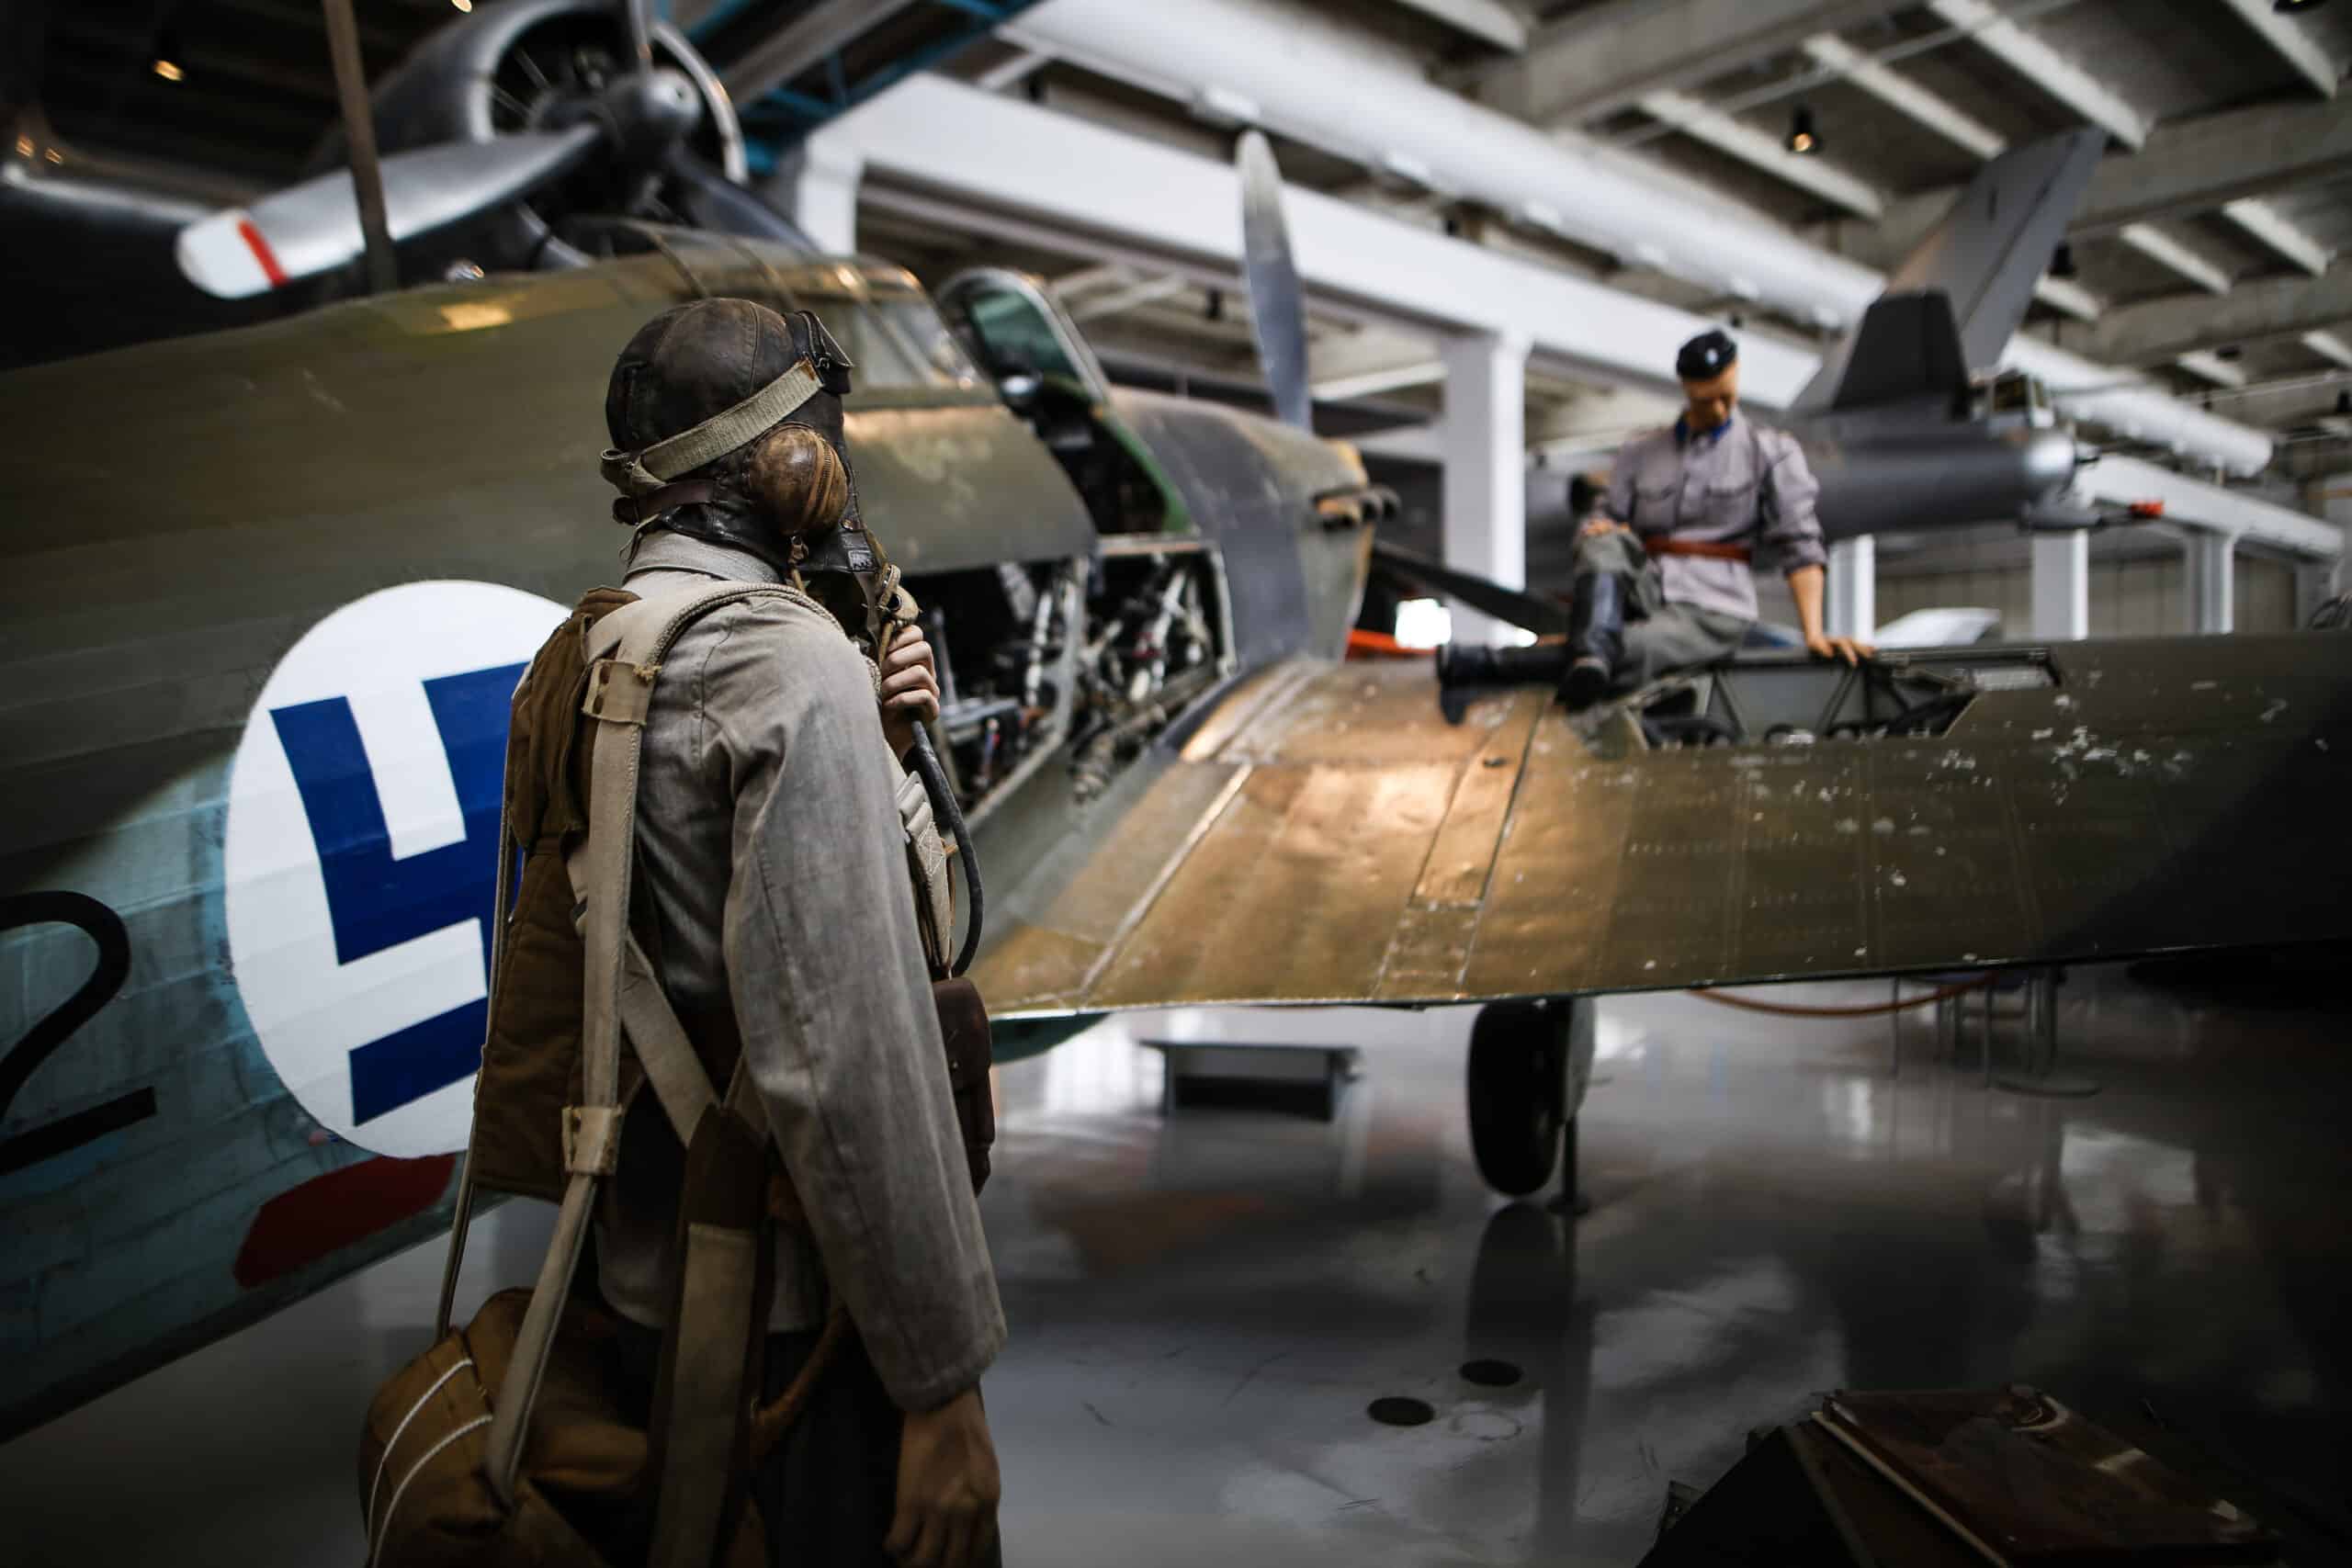 Näyttelyssä olevan Hurrcanen siivellä istuu mekaanikkonukke sota-ajan vaatetuksessa. Lentäjänukke katsoo mekaanikkoa.